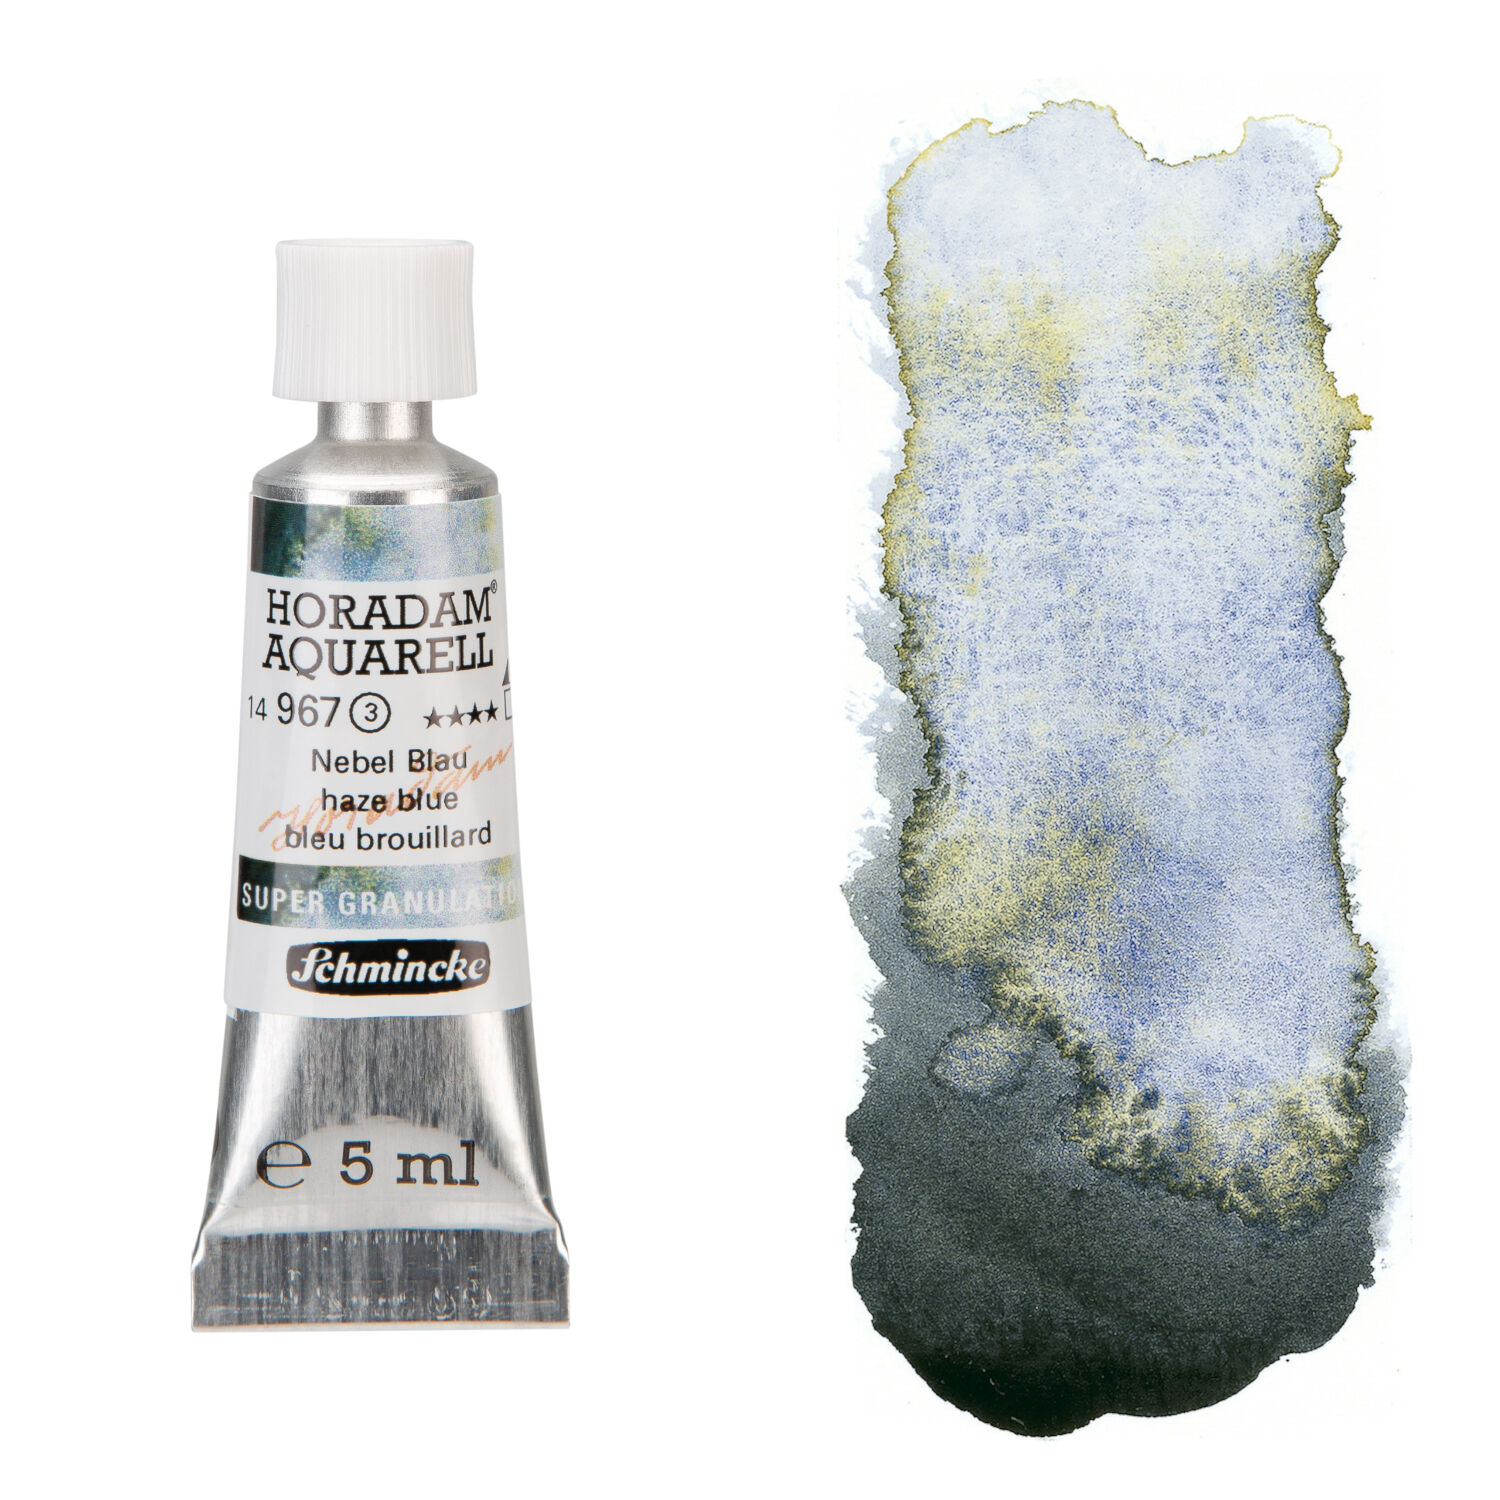 NEU Horadam Aquarell Super Granulation 5 ml, Nebel Blau